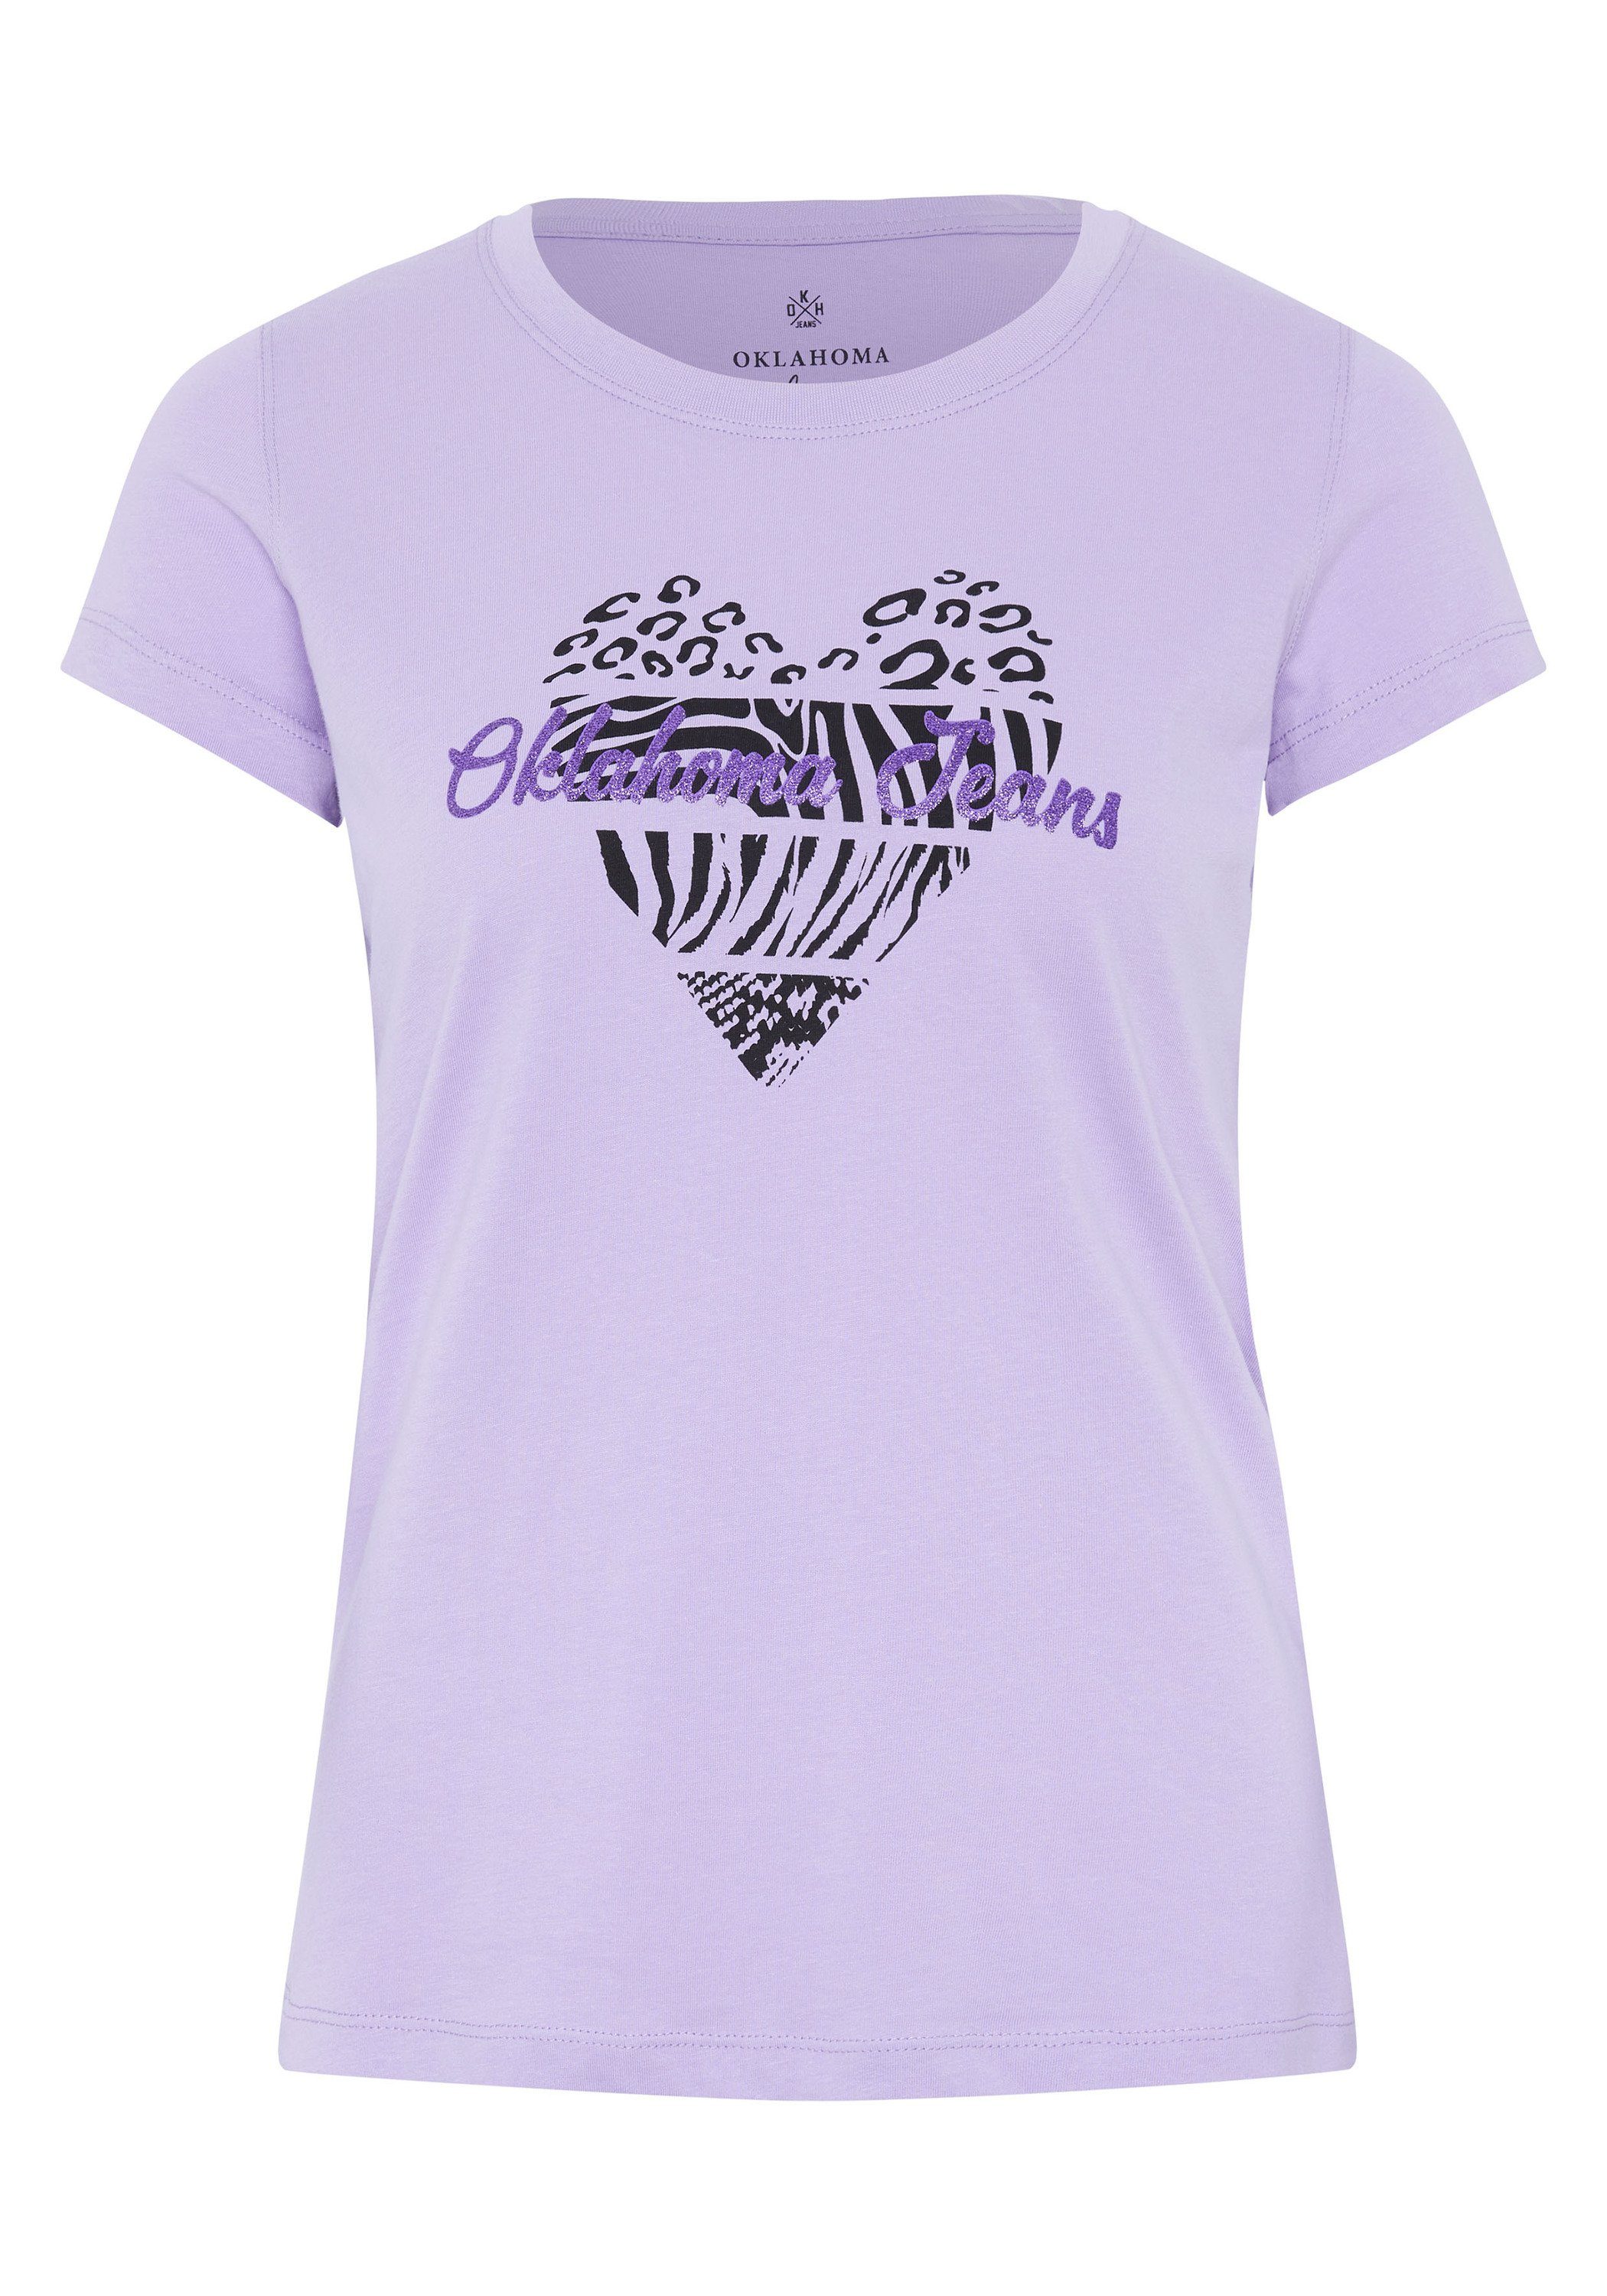 Herz-Motiv Jeans Rose und Logo-Schriftzug 15-3716 Purple Oklahoma Print-Shirt mit